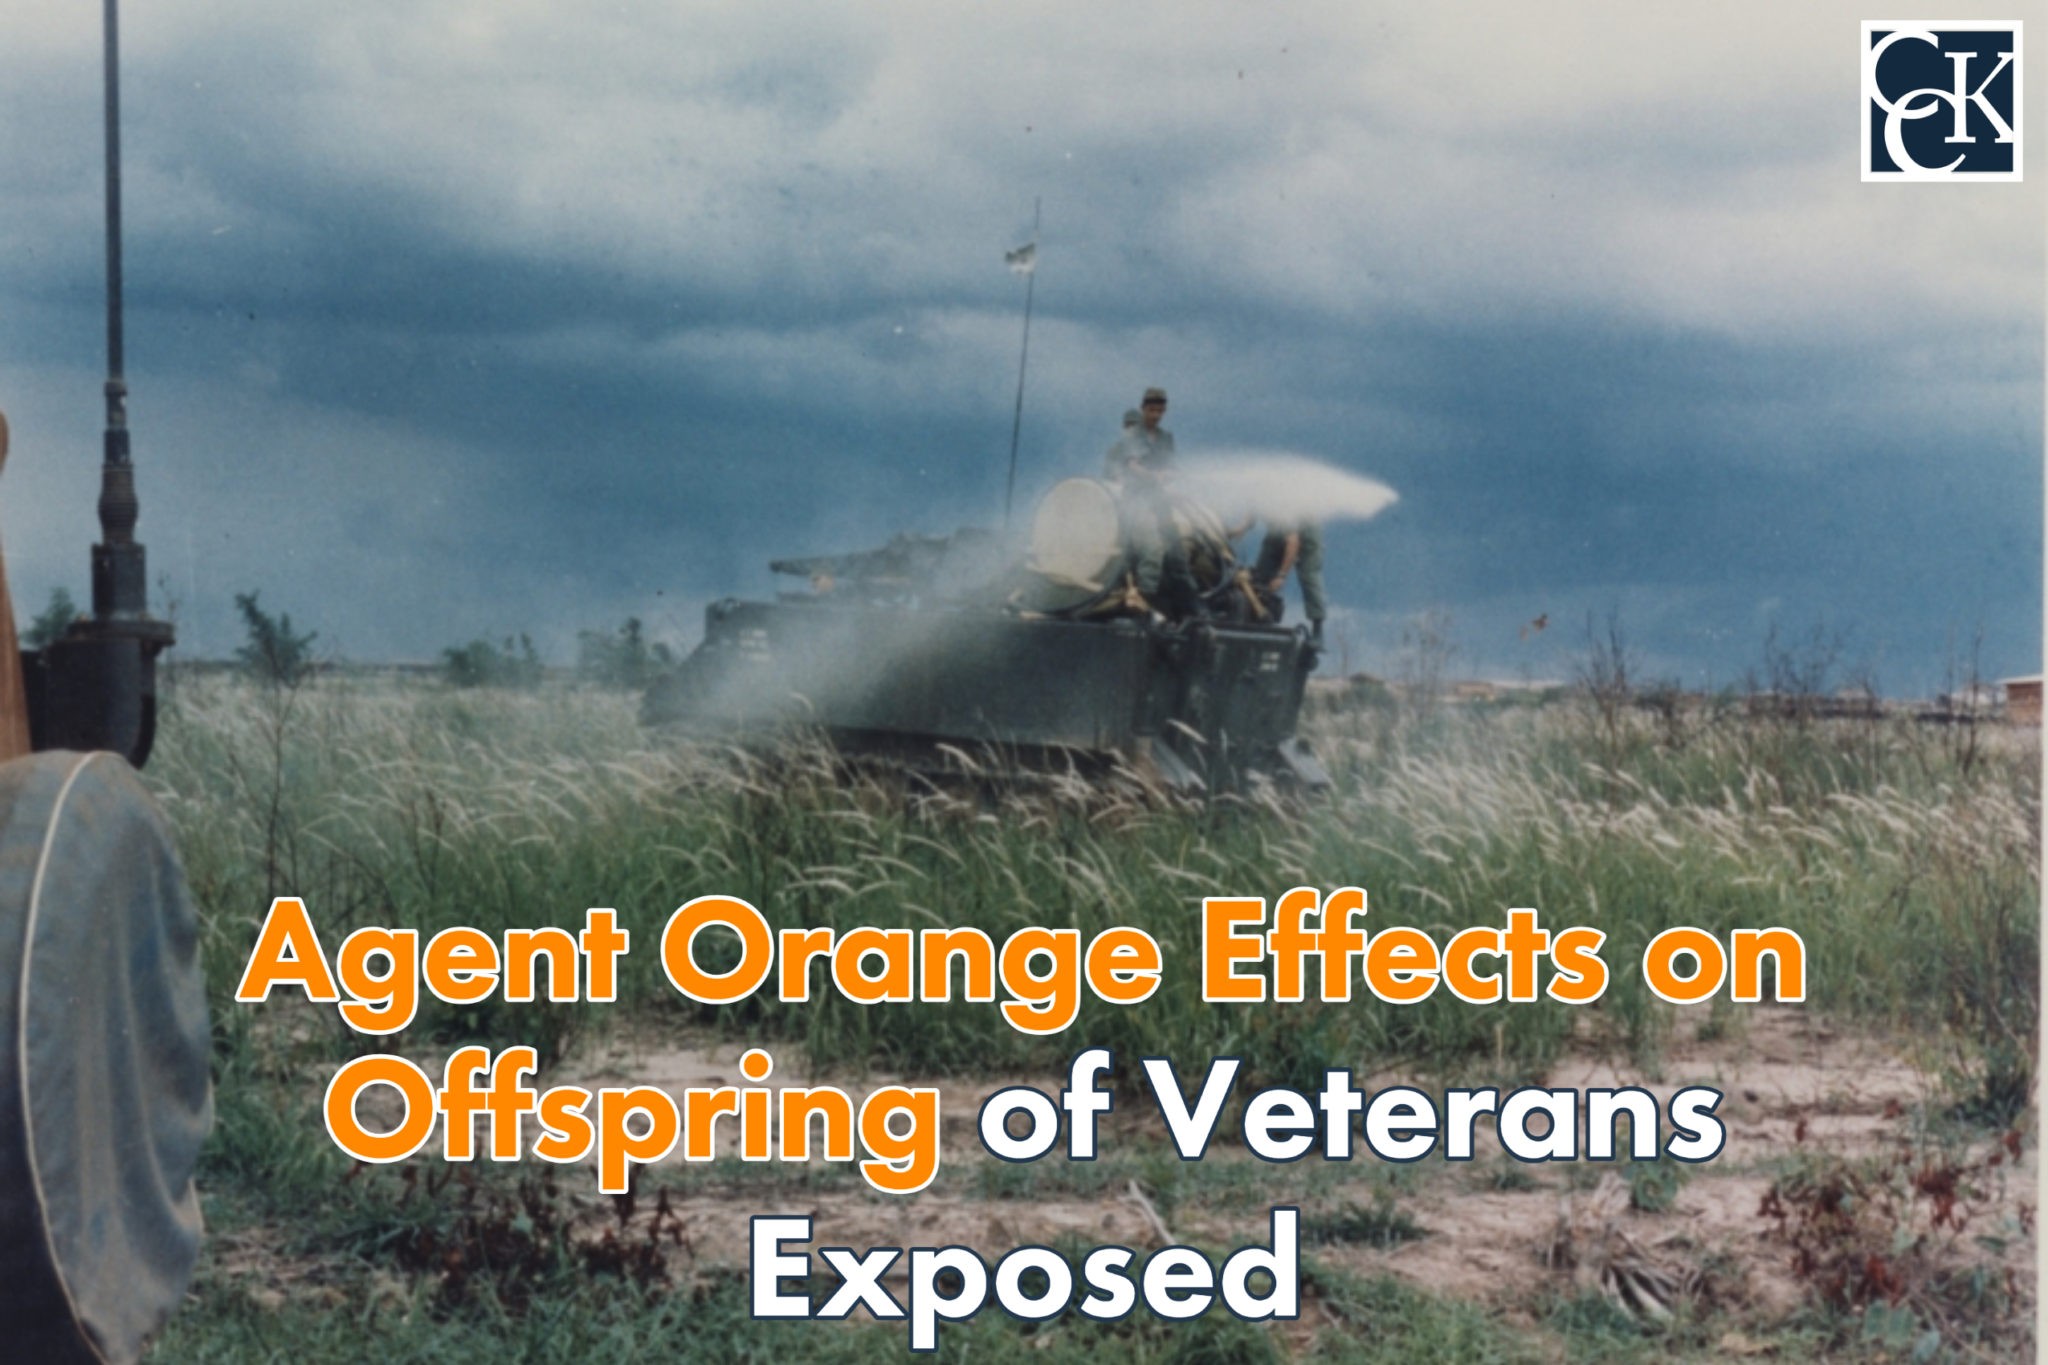 Agent Orange in Thailand During the Vietnam War CCK Law